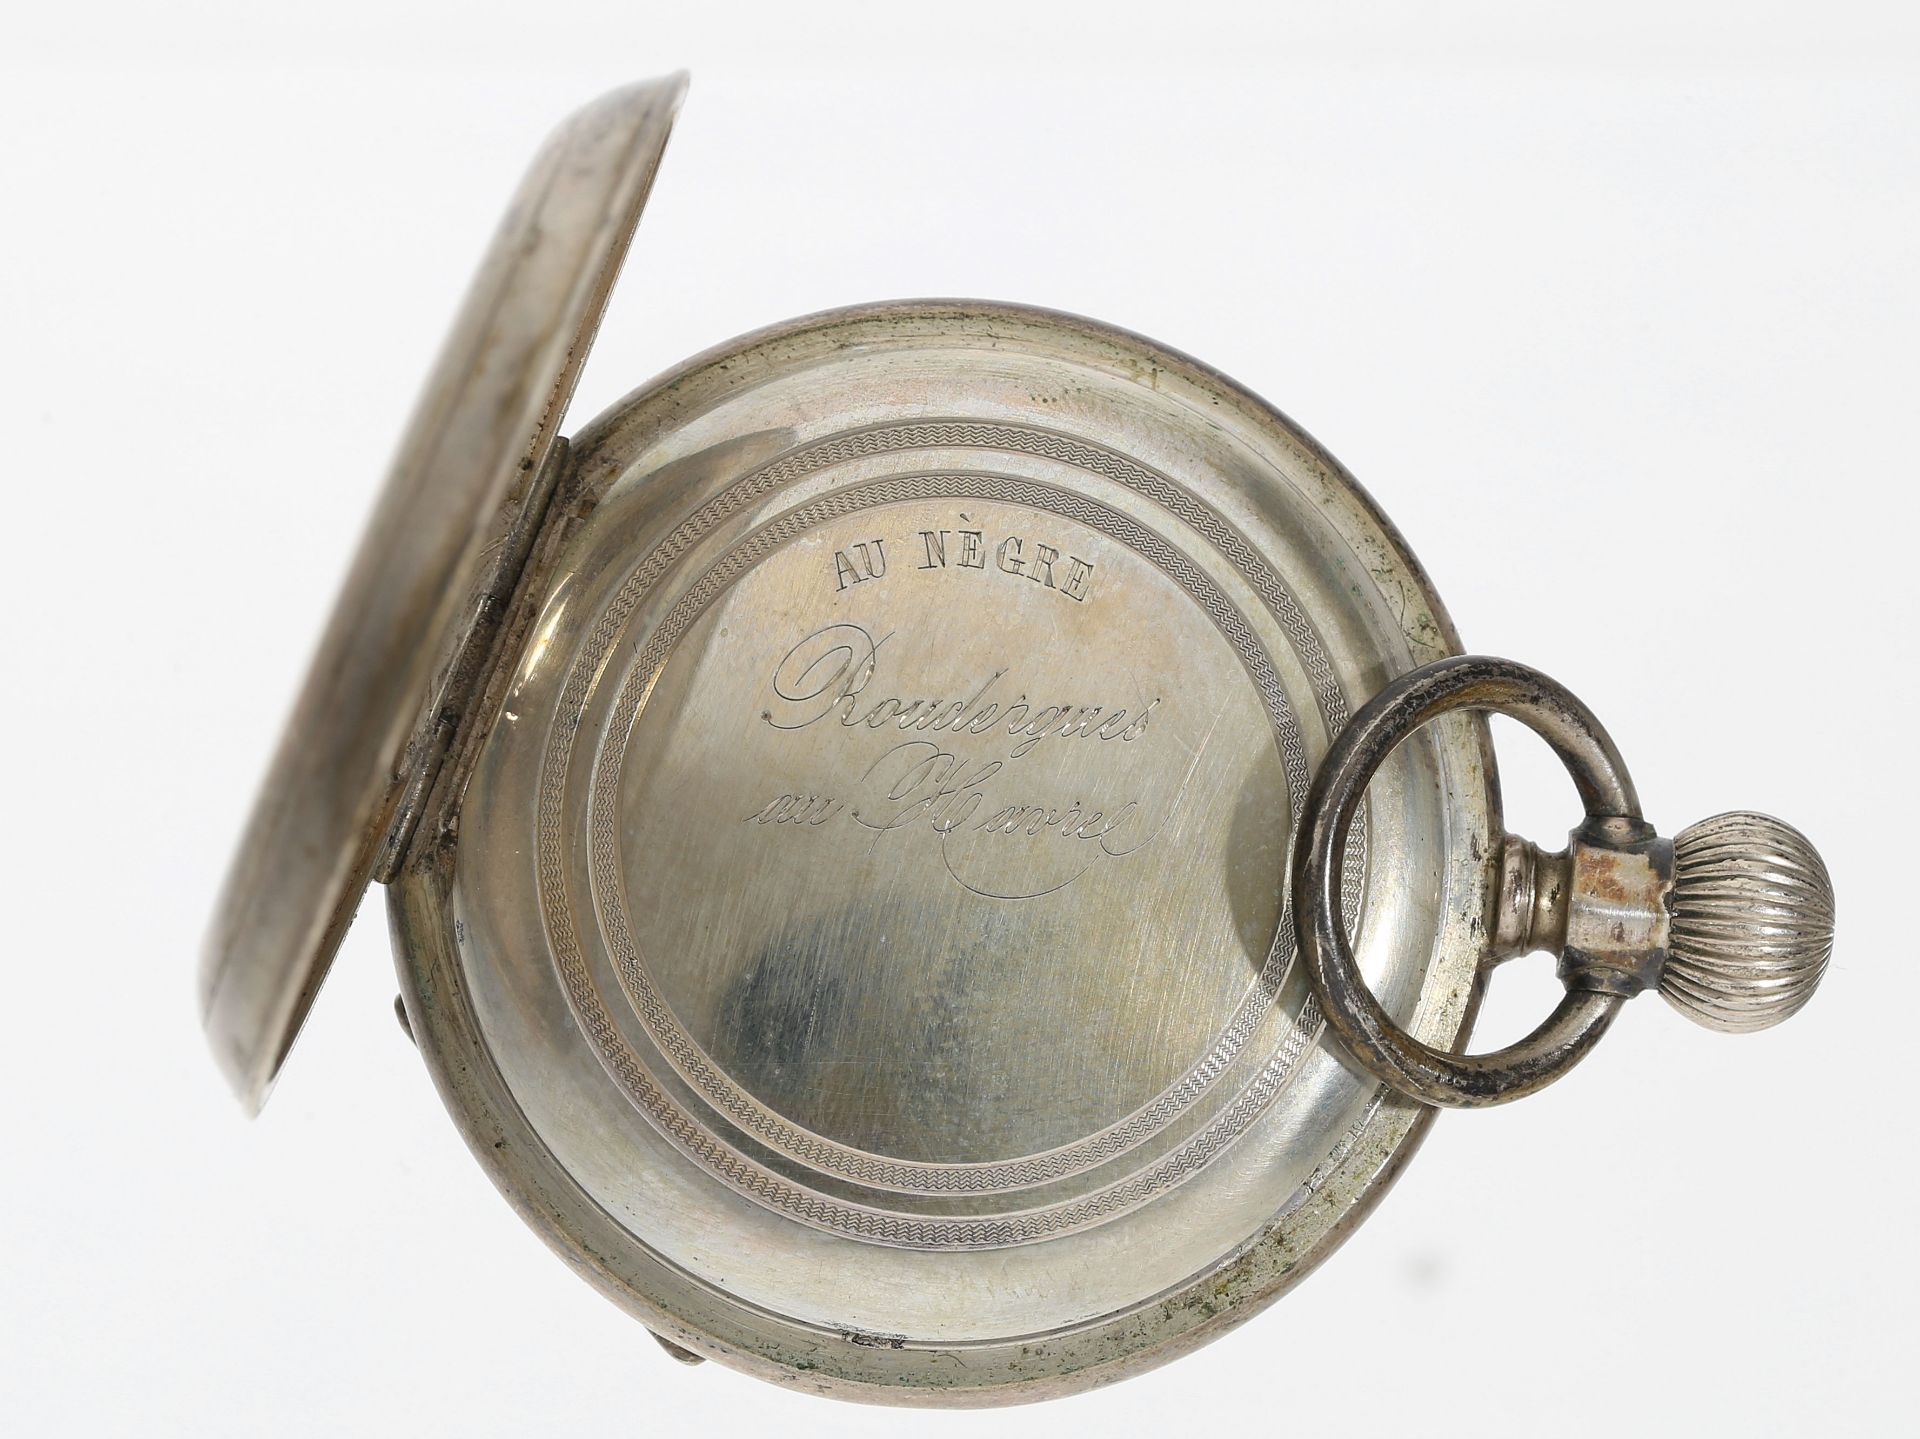 Taschenuhr: frühe Taschenuhr mit Zeigerdatum, Roudergues au Havre, Frankreich um 1880 - Bild 3 aus 4